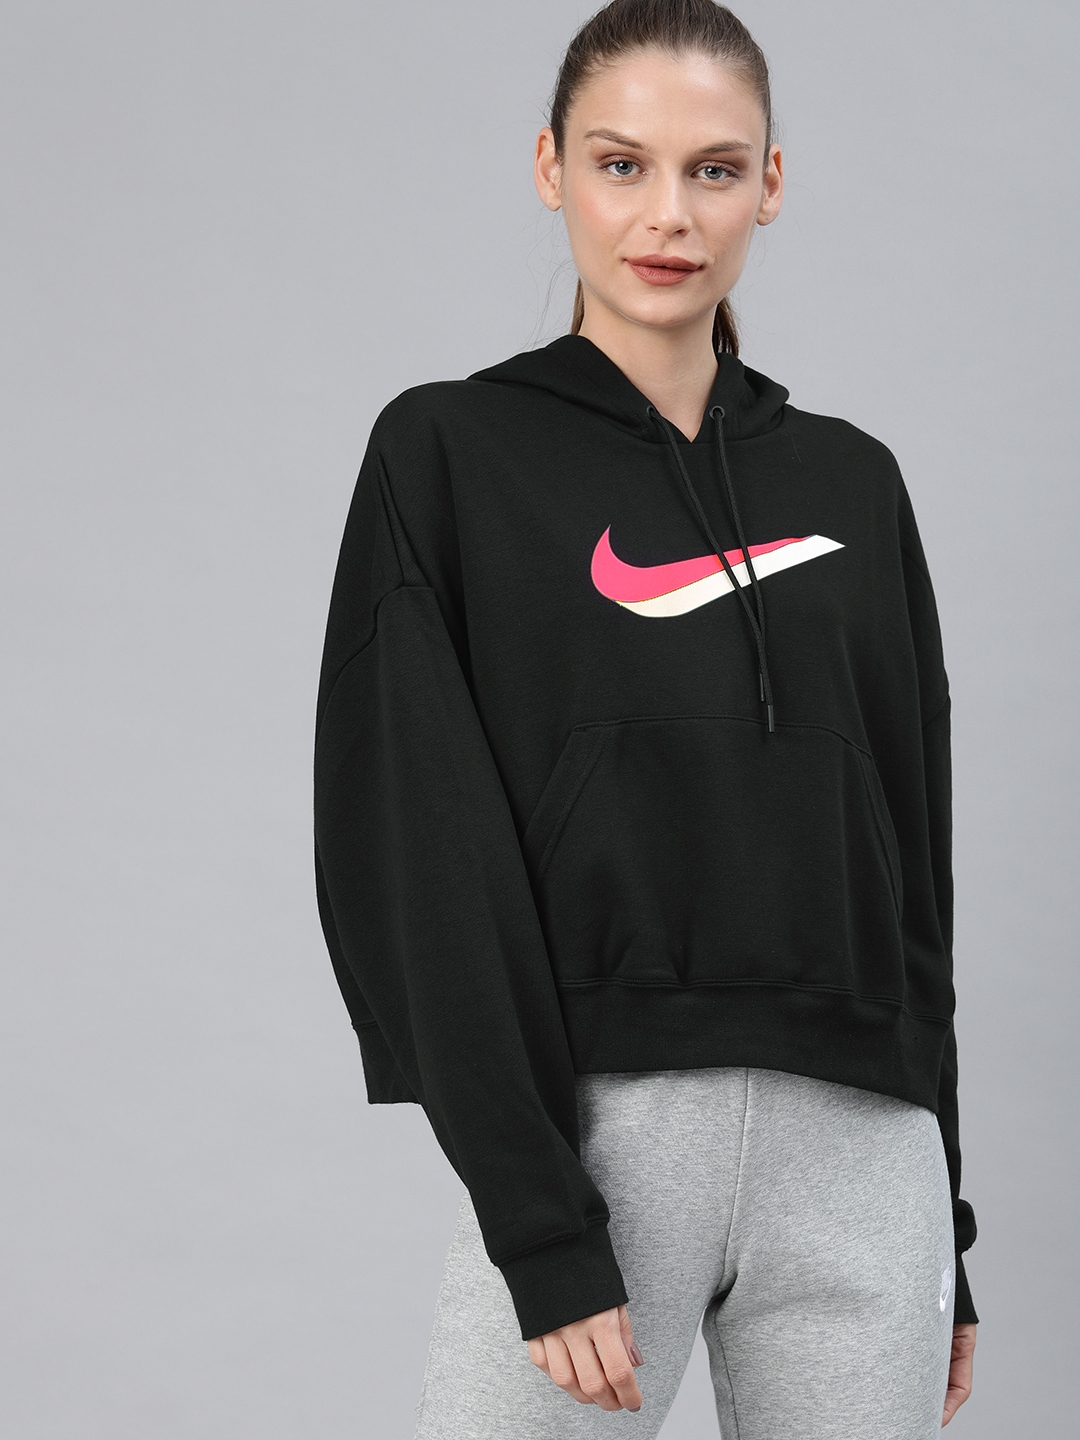 Buy Nike Women Black Printed Sporty Jacket - Jackets for Women 12916838 ...